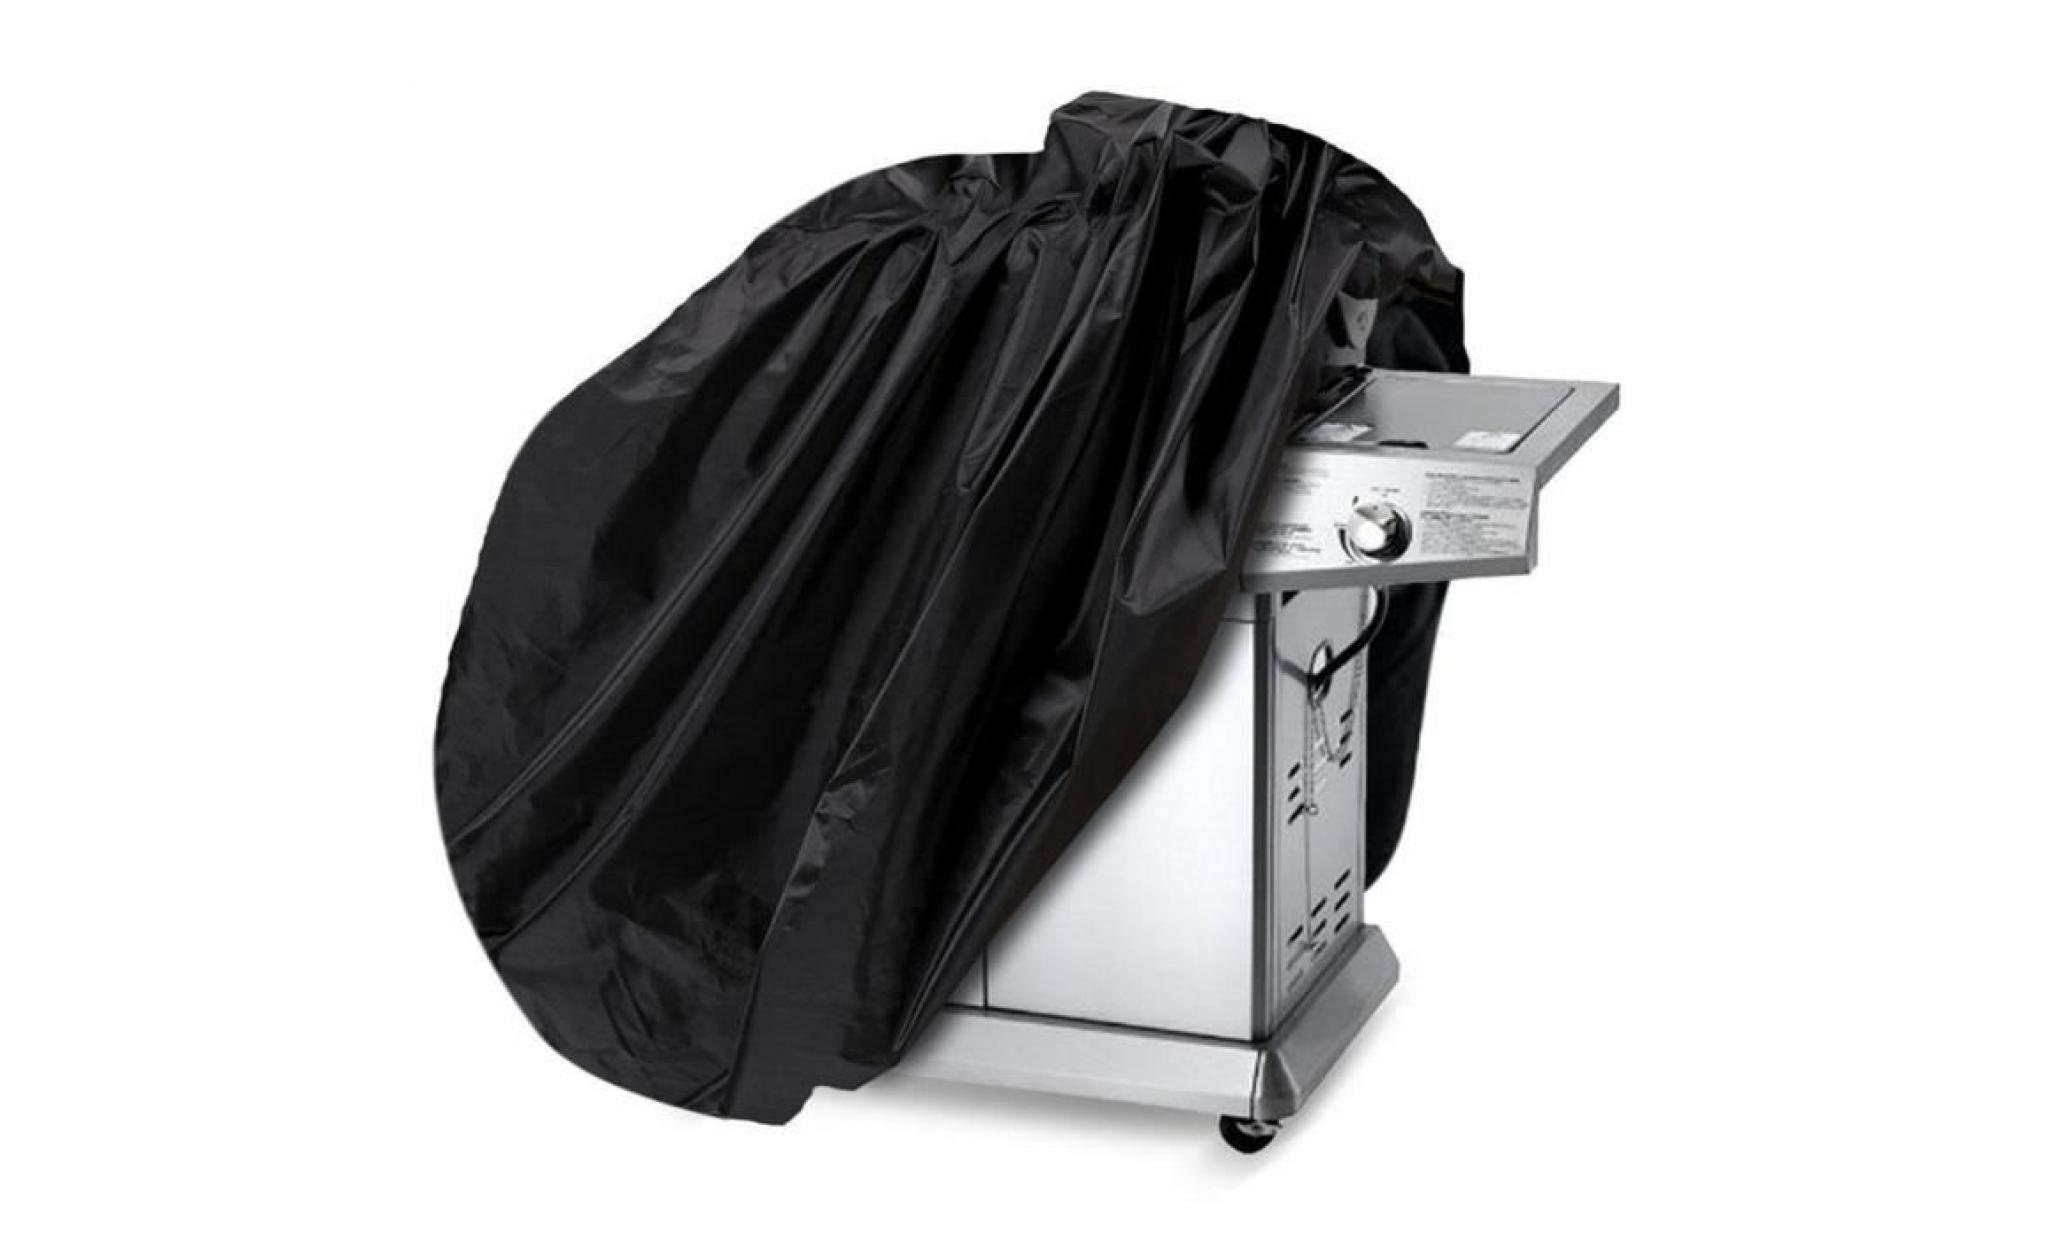 couverture de gril avec sac de rangement 6 tailles protection intérieur extérieur patio barbecue